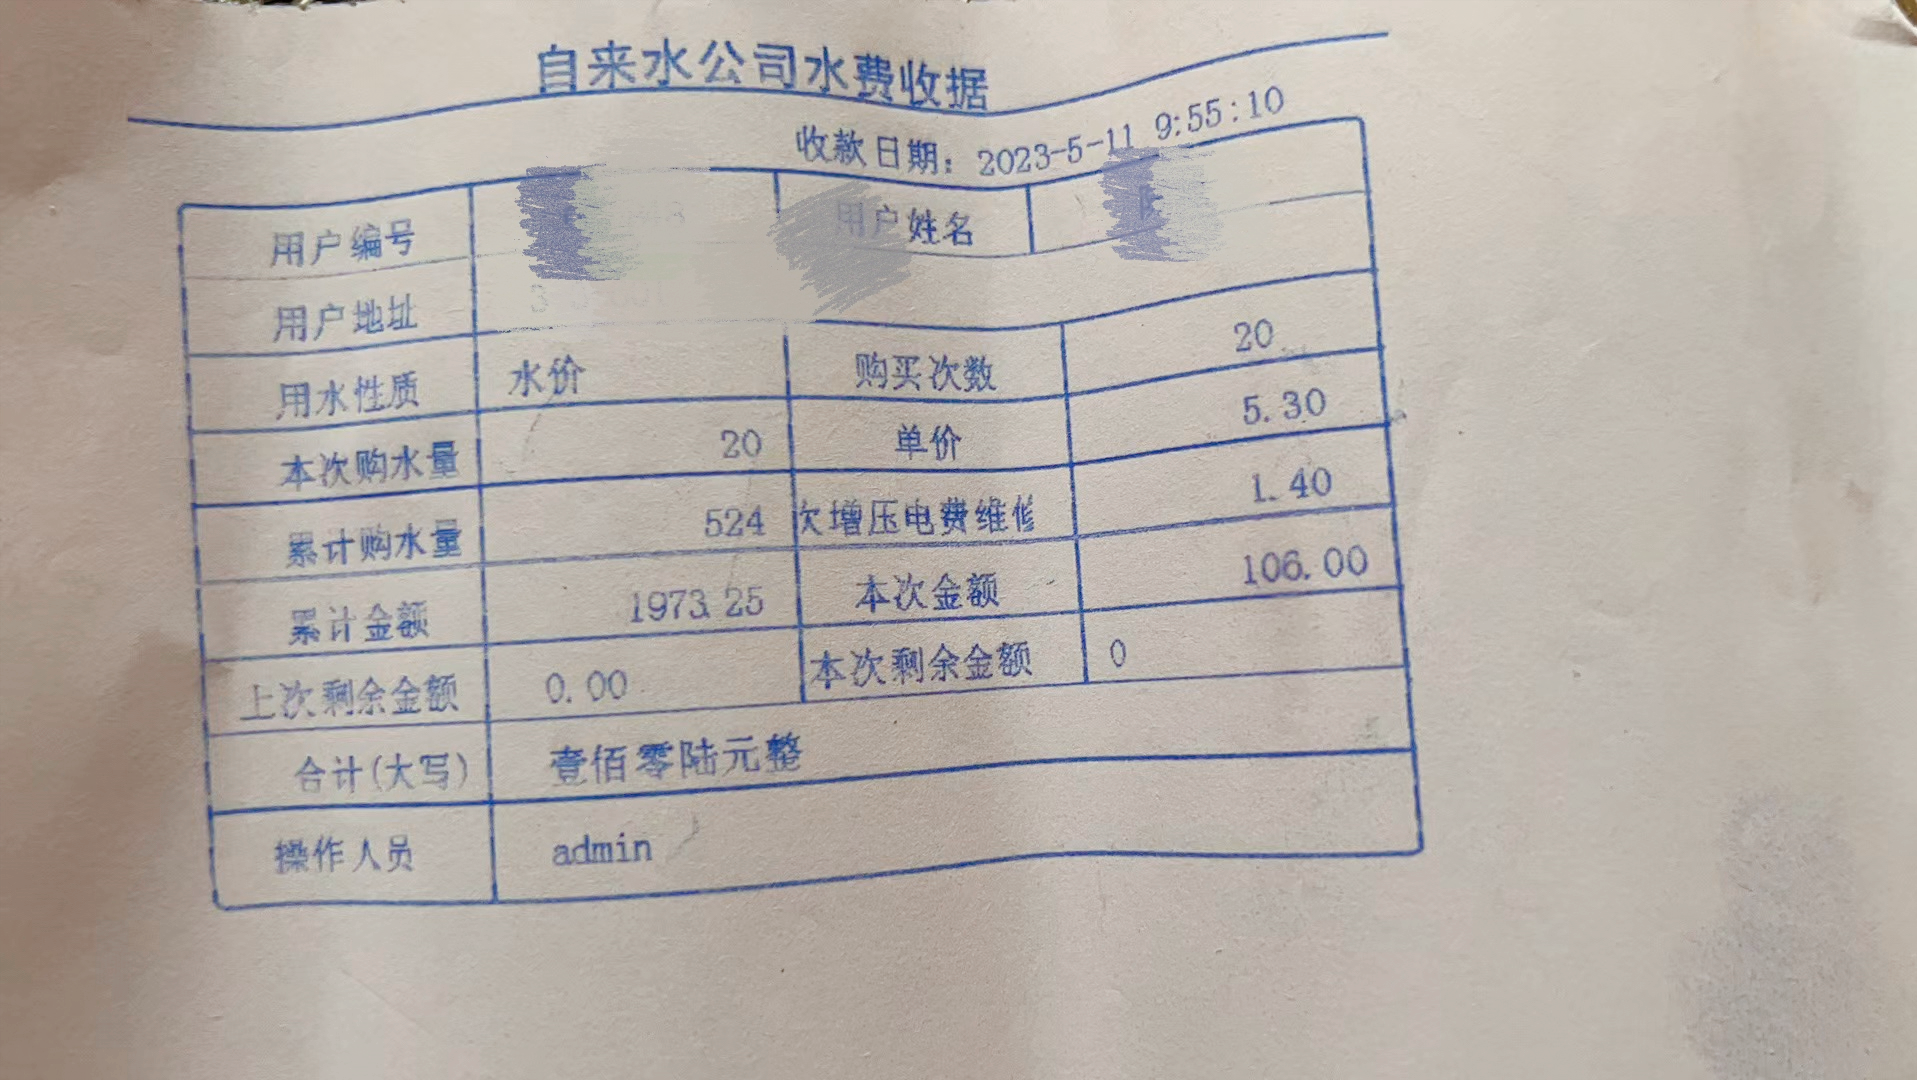 天津的小伙伴反映:小区的水费,物业费涨价,自来水每吨53元